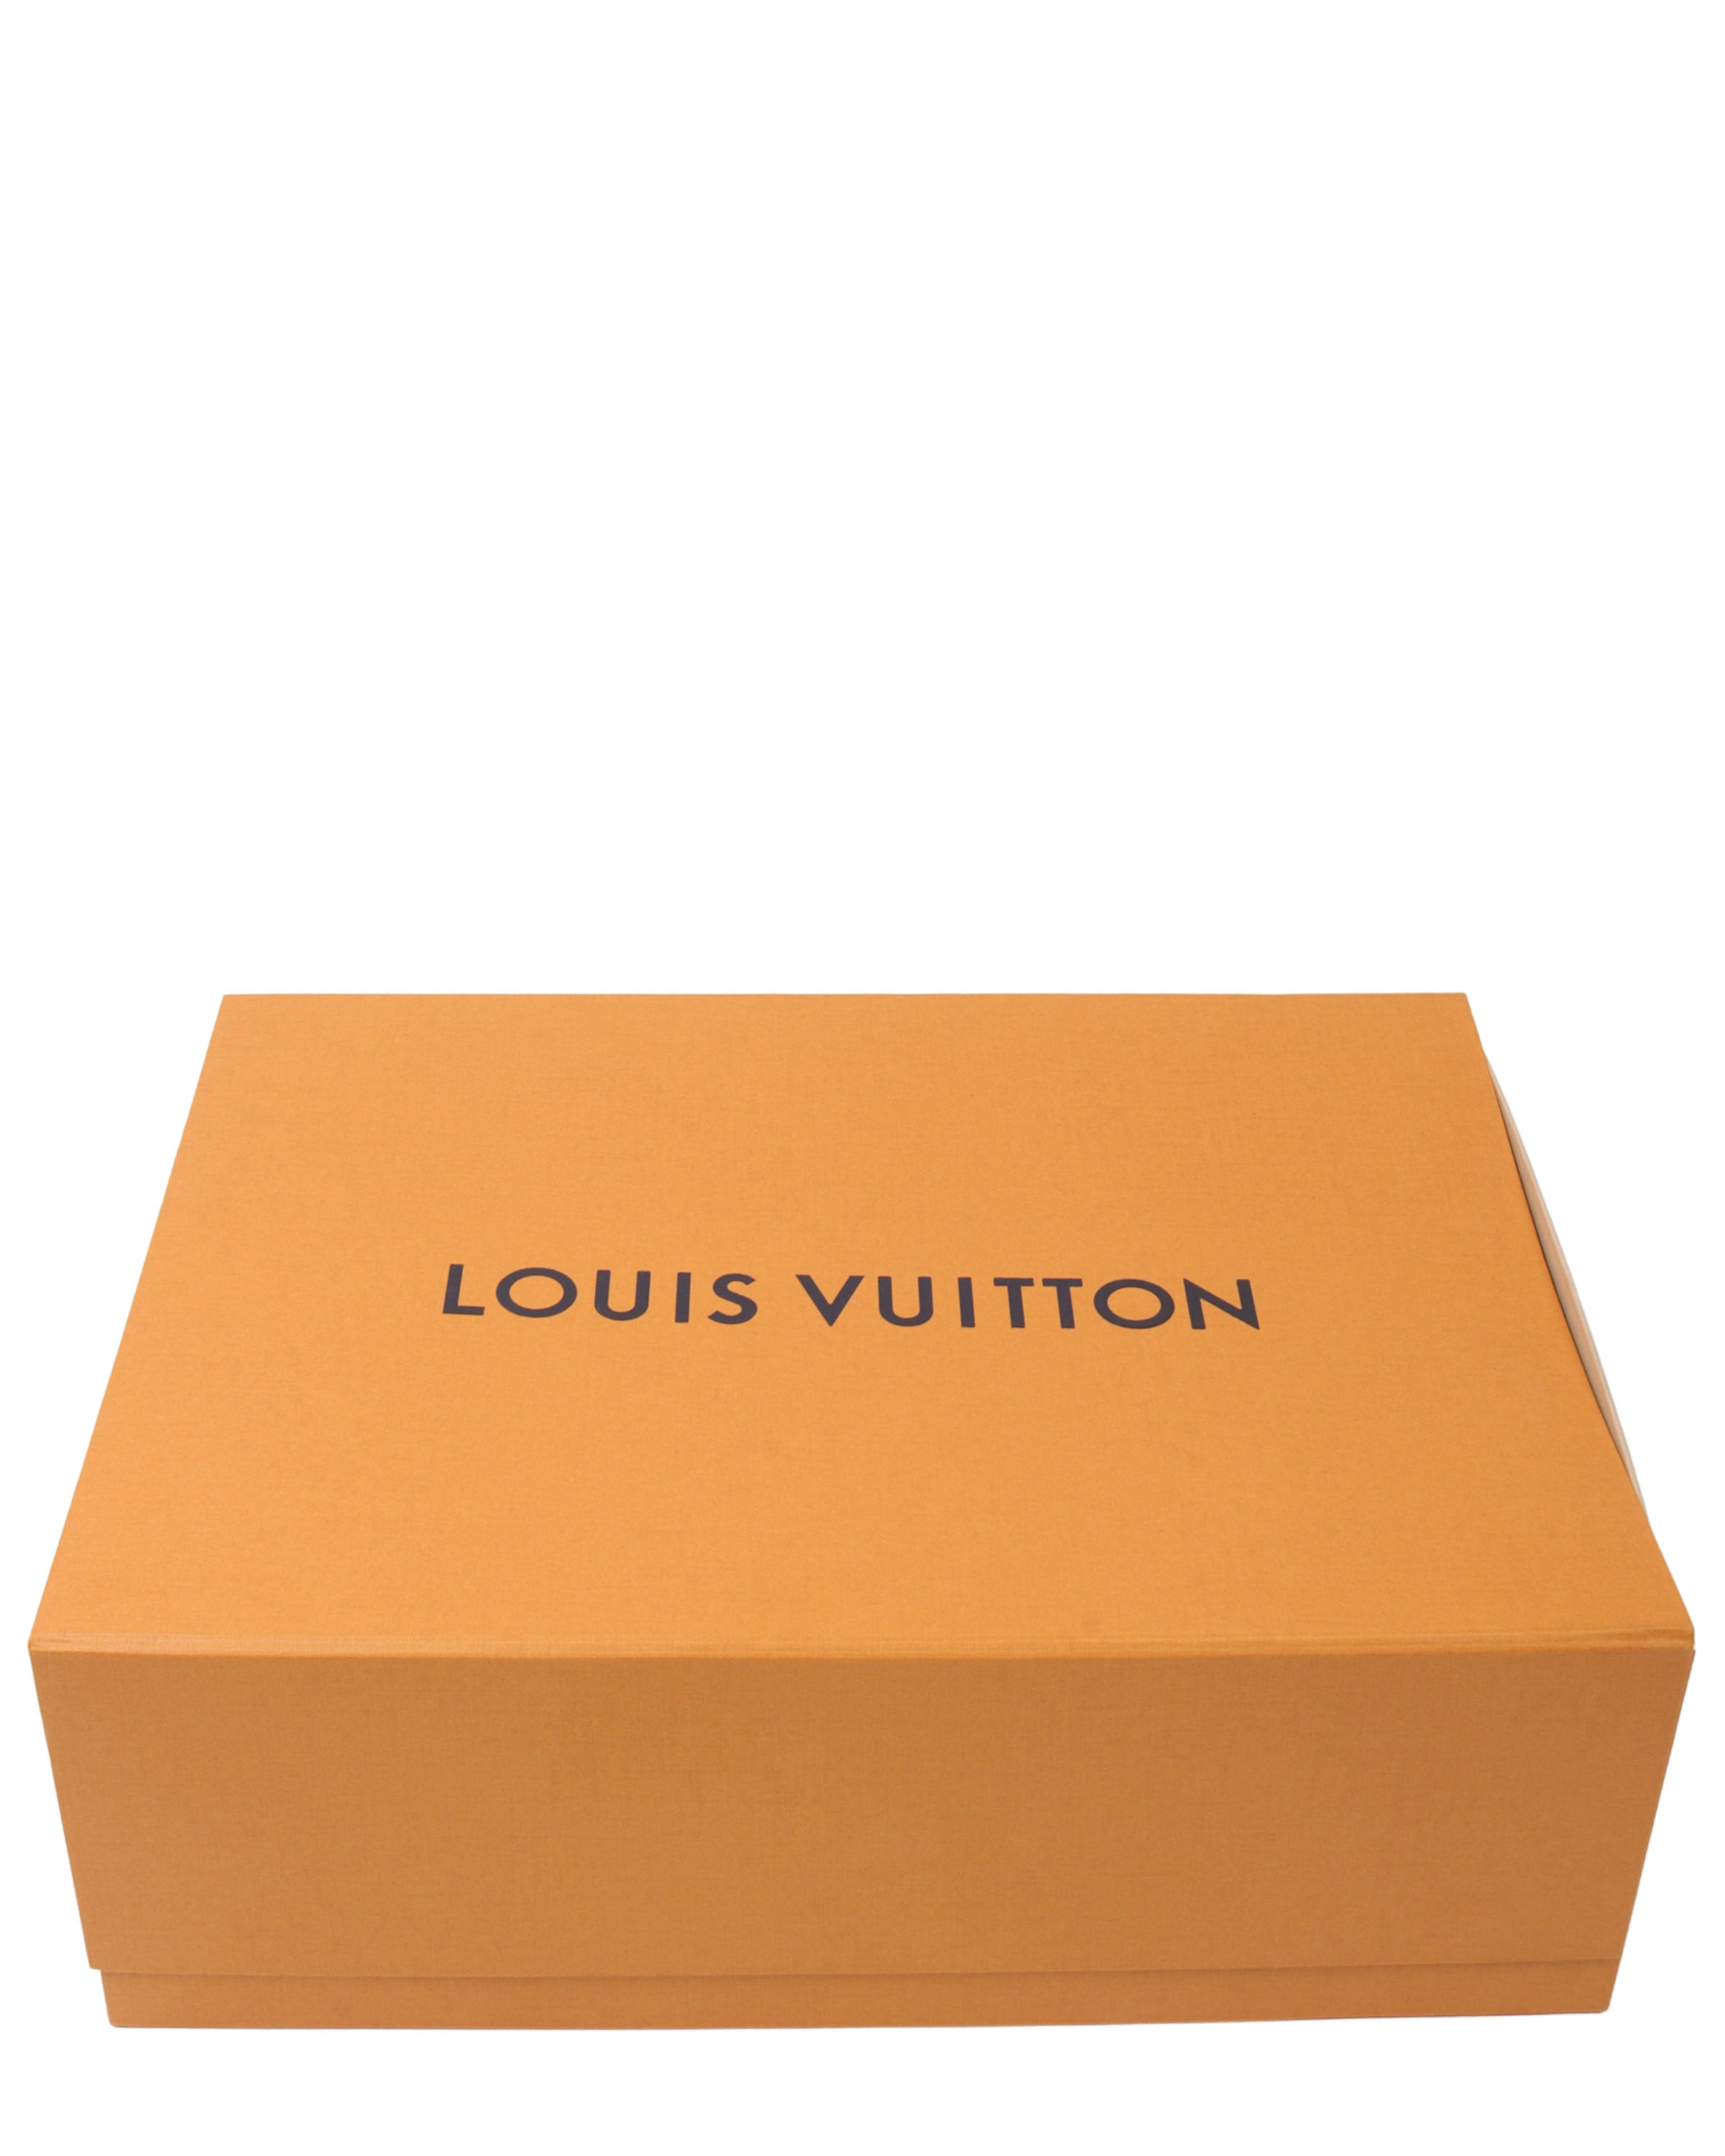 Louis Vuitton Pochette Volga Monogram Prism in PVC with White - US